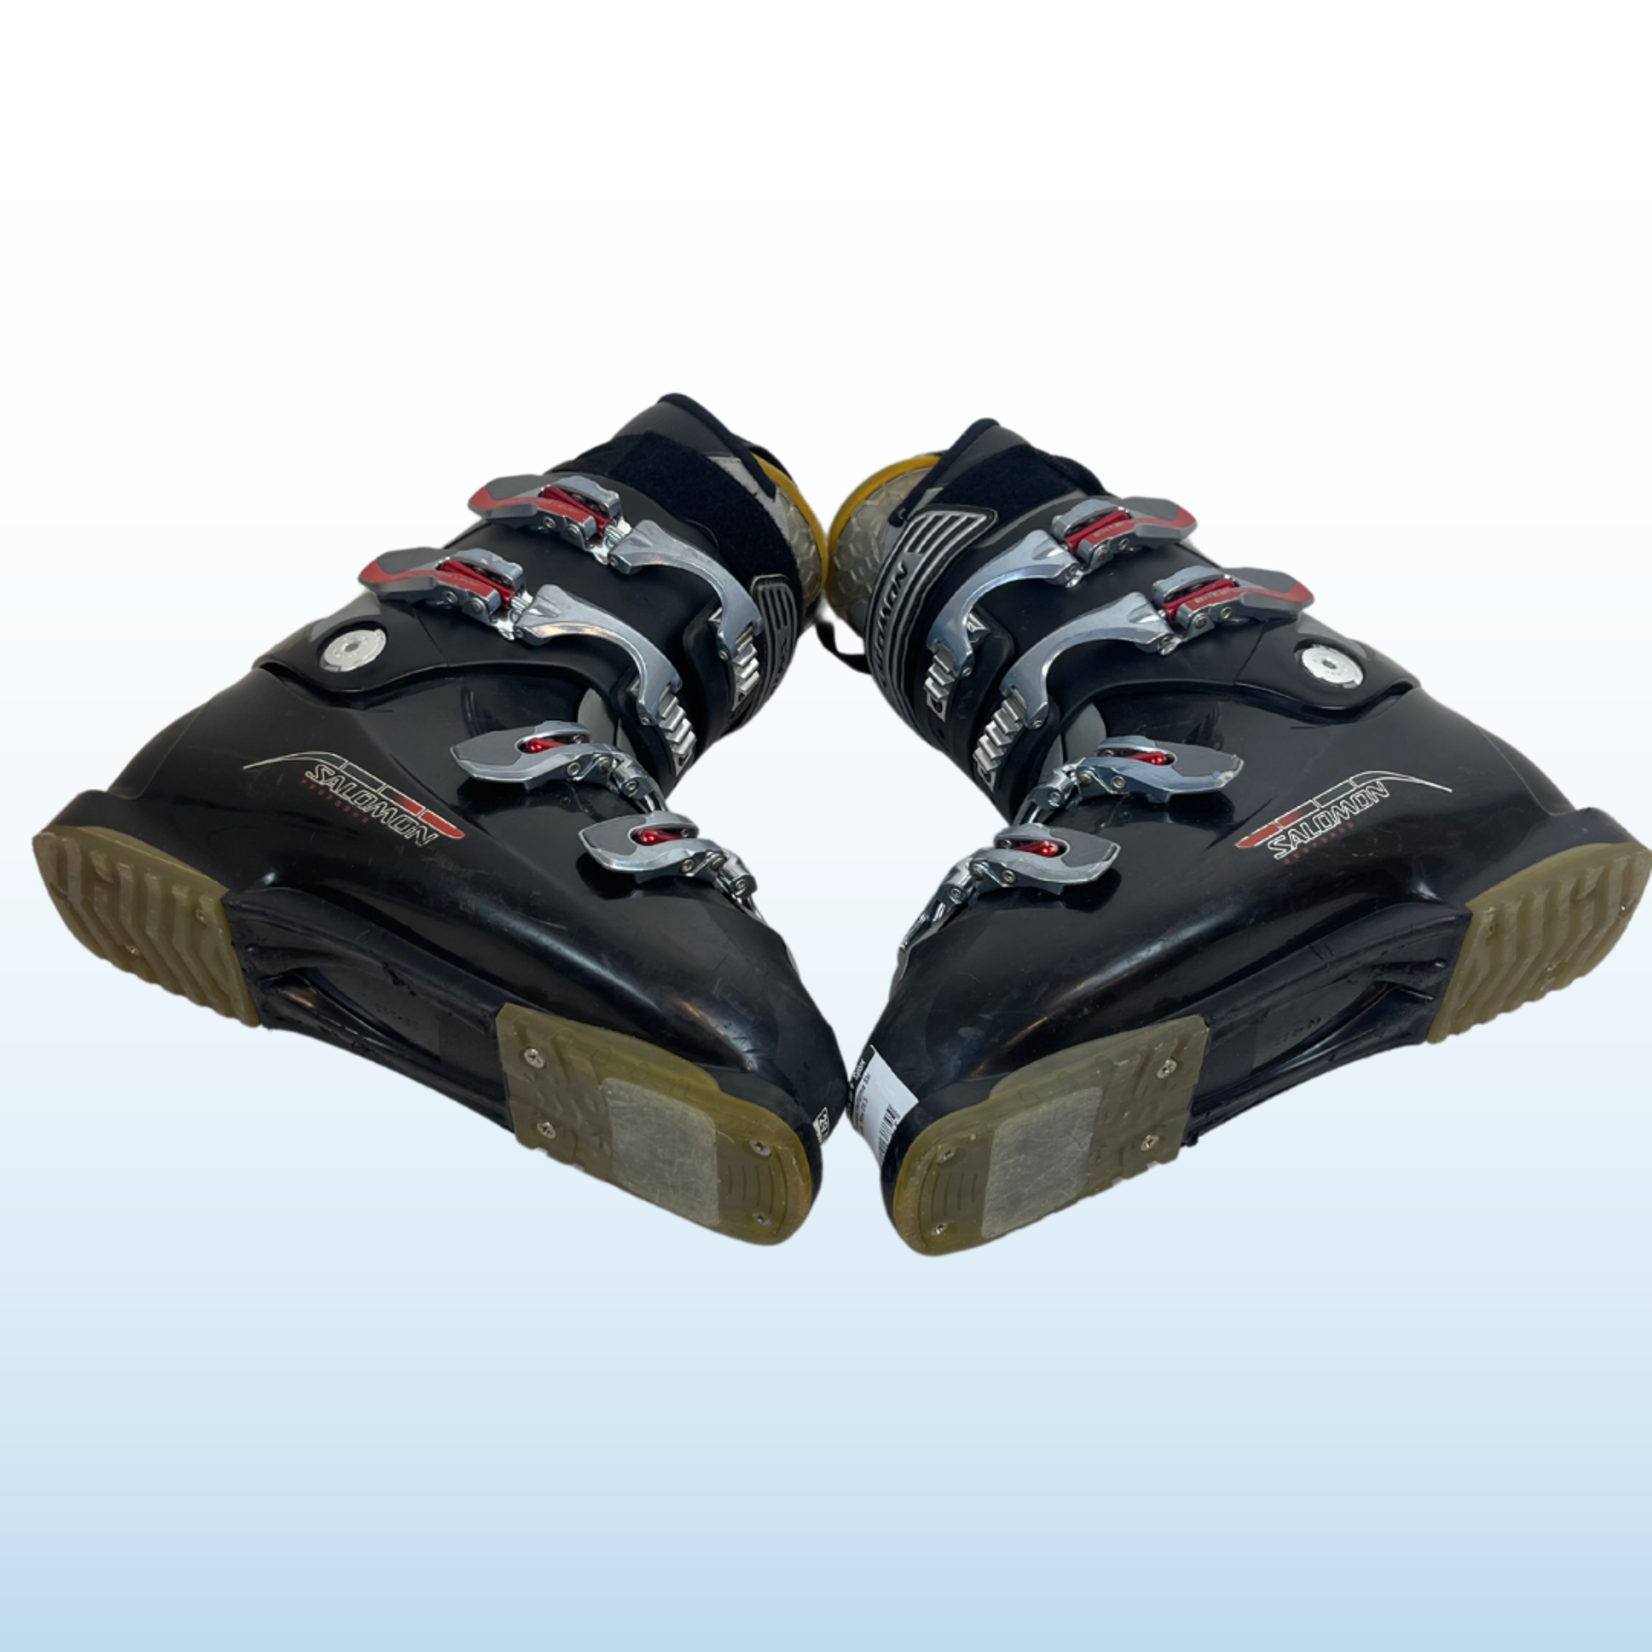 Salomon Salomon Performa Ski Boots, Size 29.5